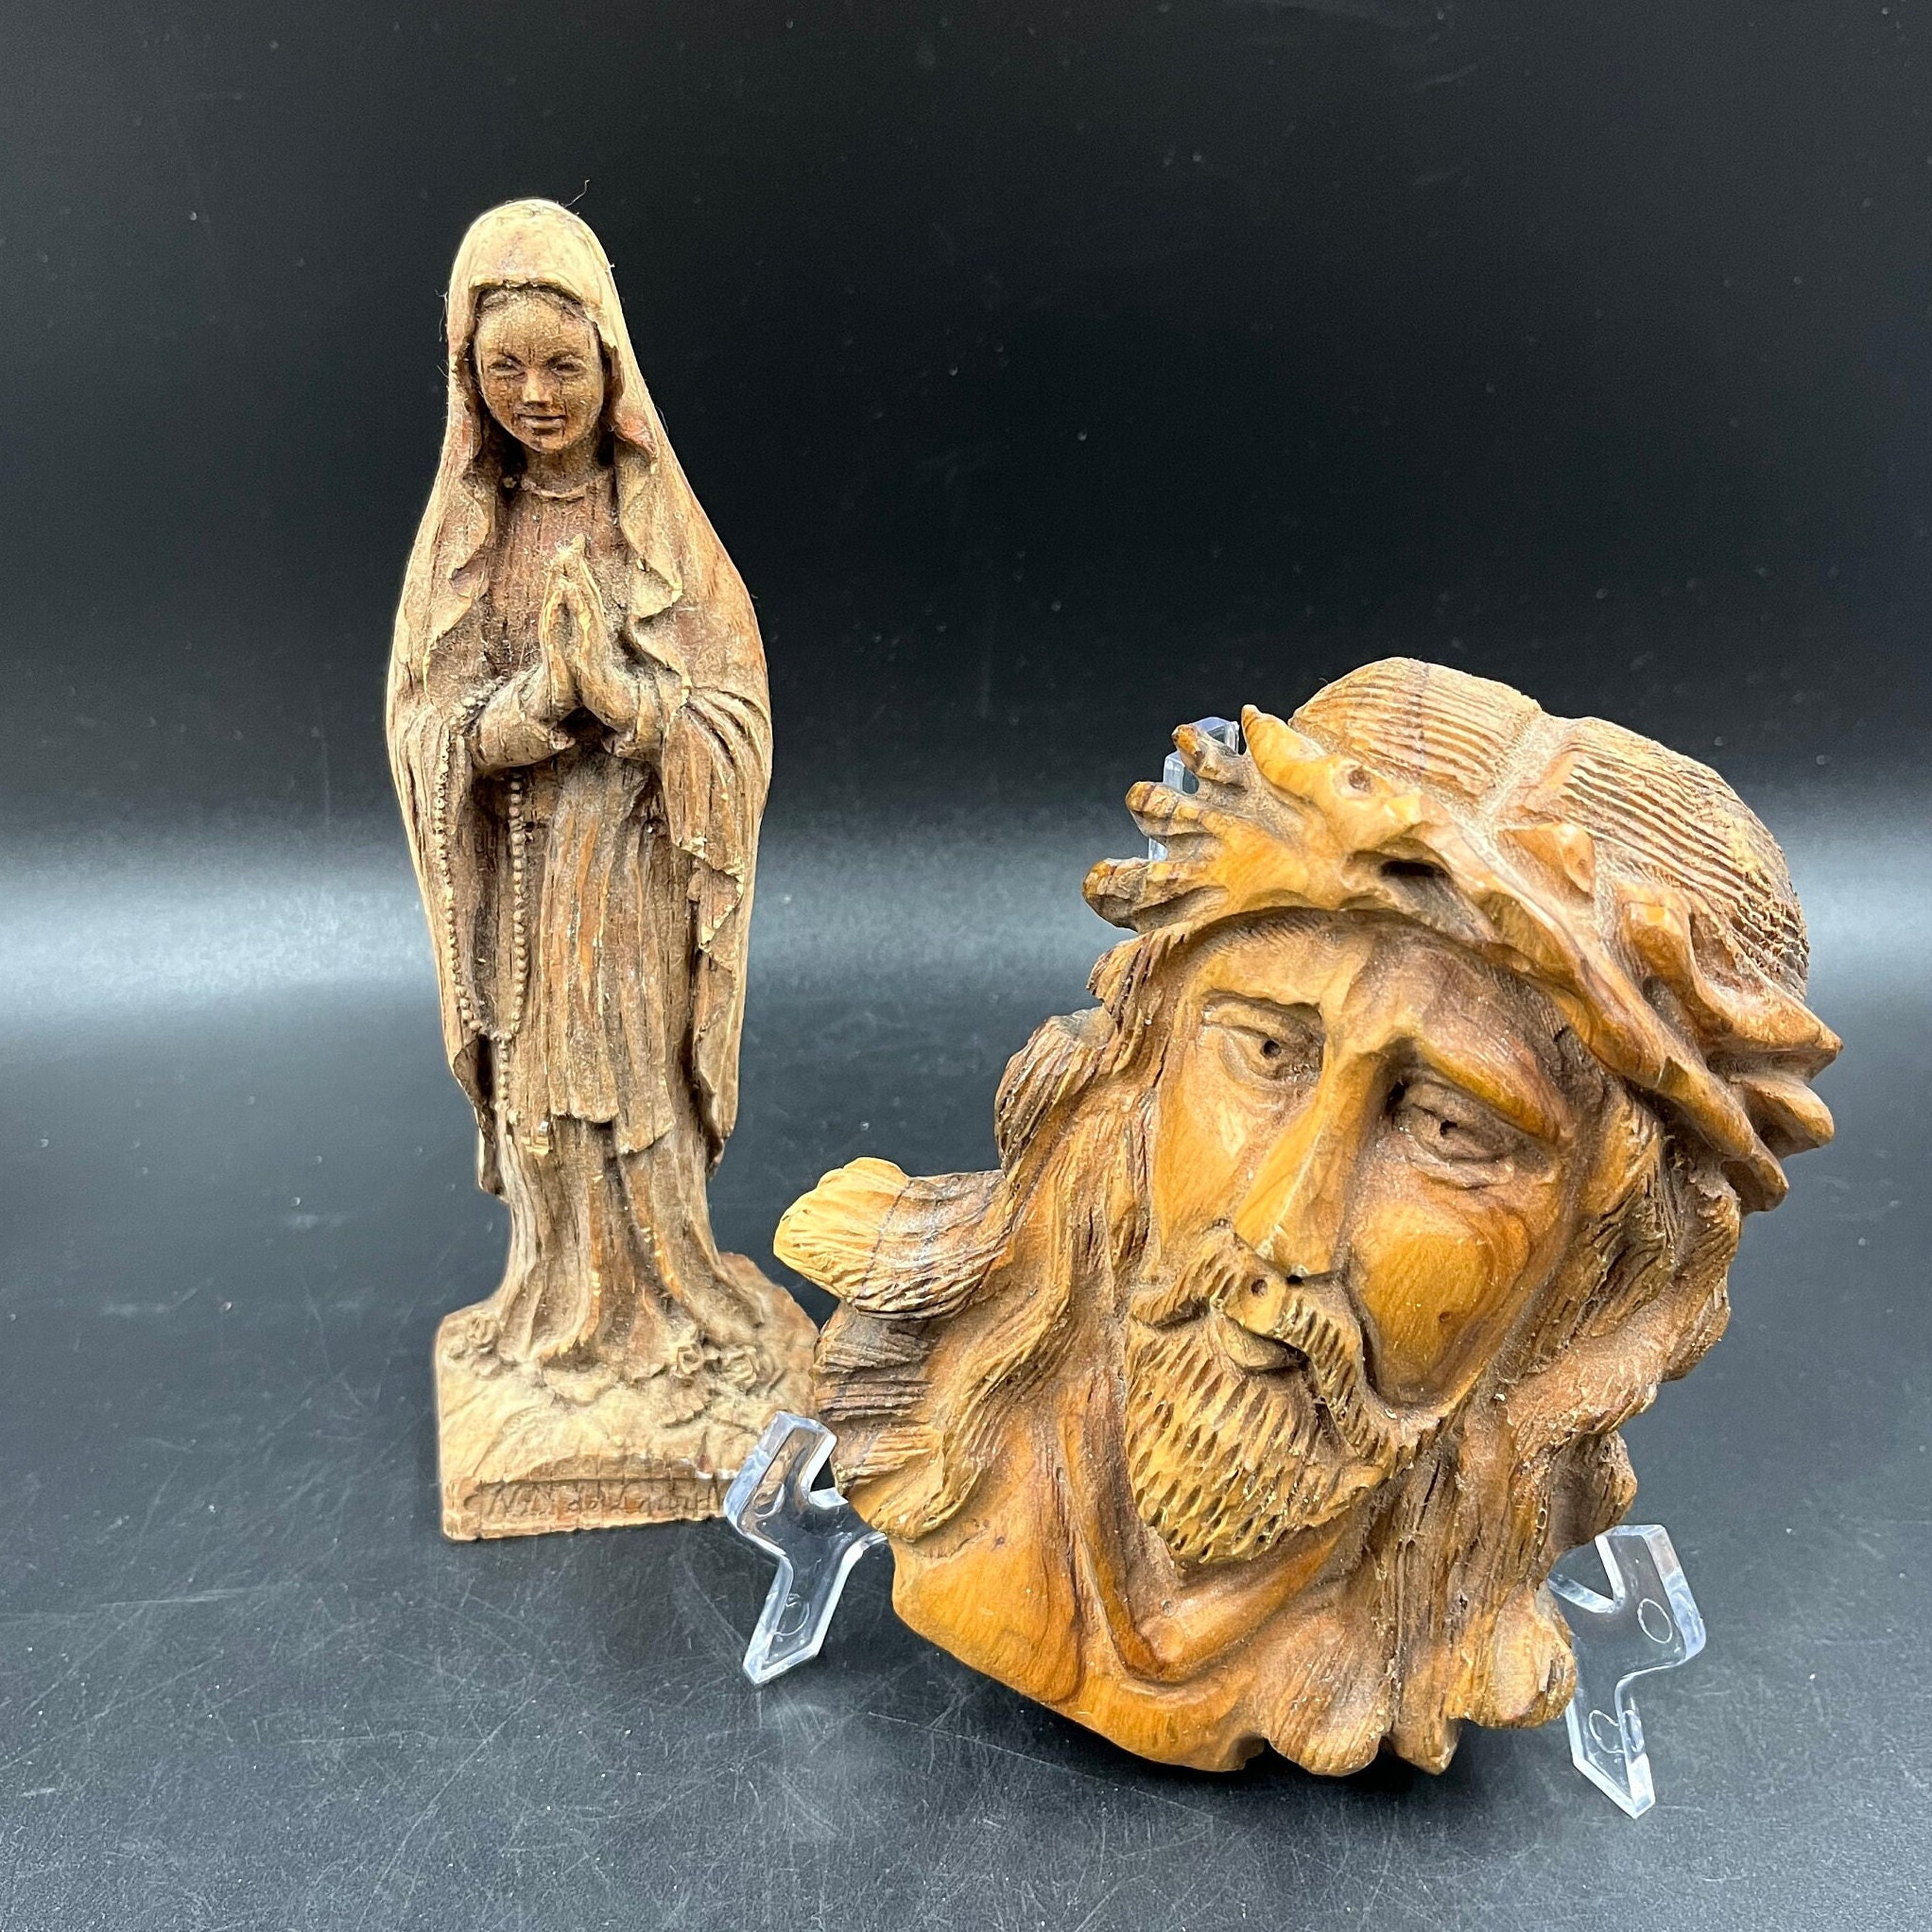 Statue Notre Dame de Lourdes 30cm Effet Céramique – Symbole de Dévotion